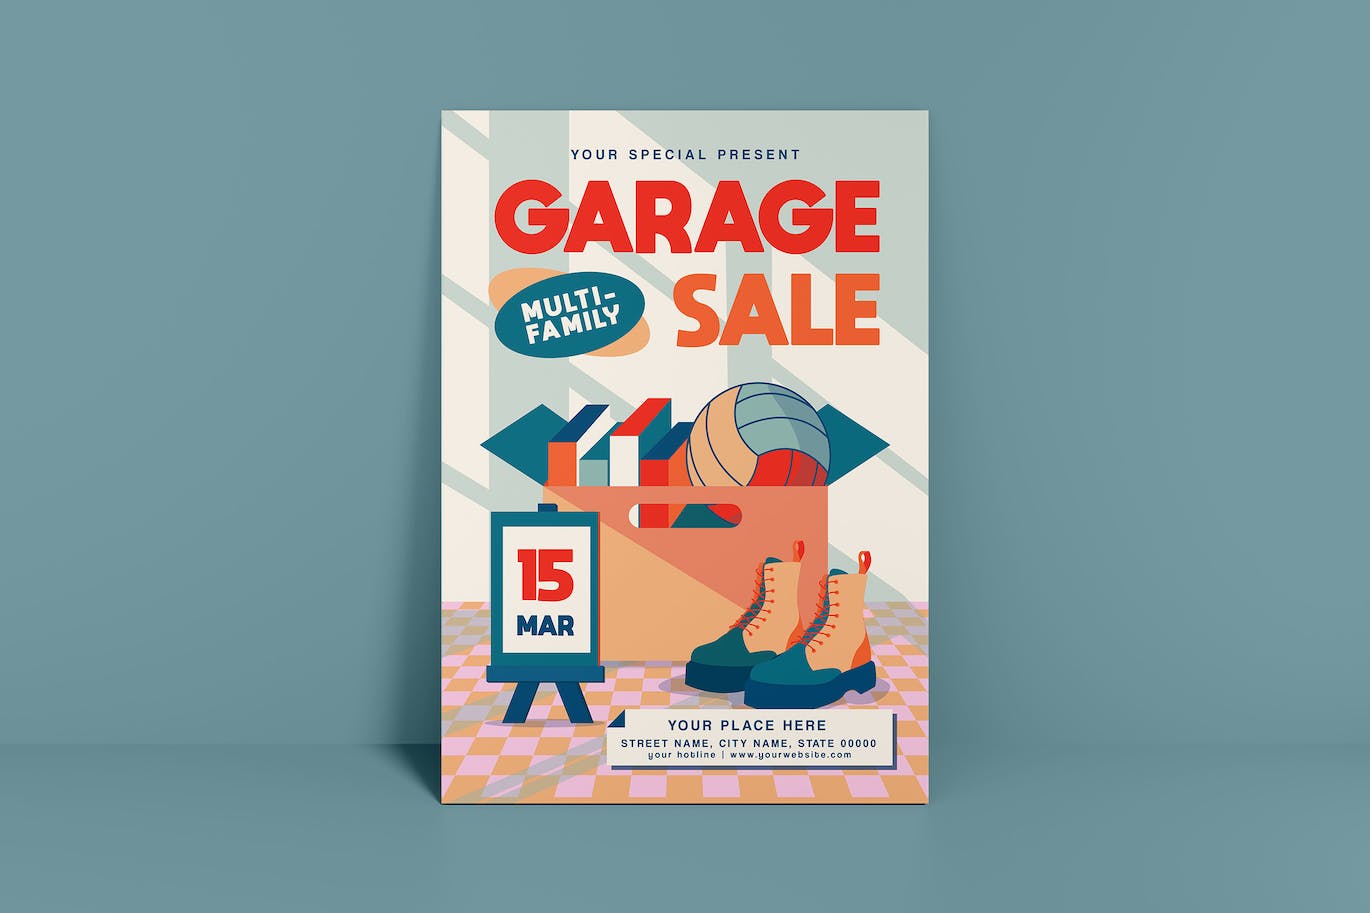 旧货销售传单模板下载 Garage Sale Flyer 设计素材 第1张